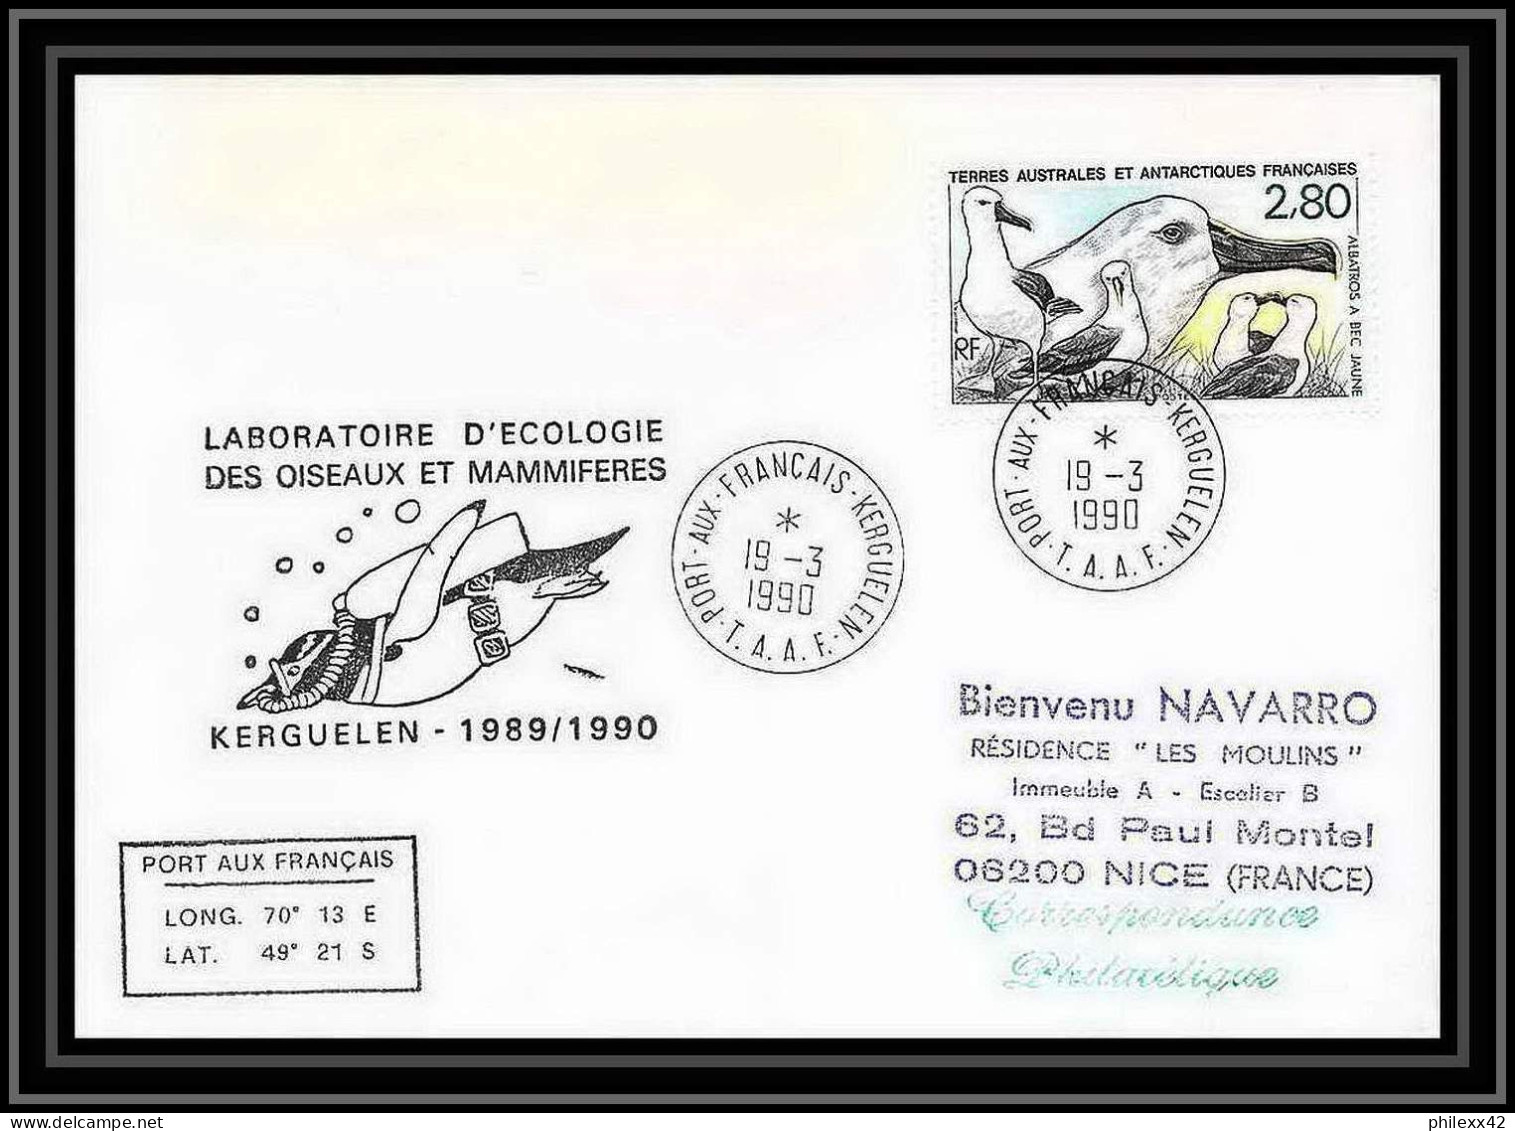 1731 Laboratoire D'ecologie Oiseau Et Mammifères 19/3/1990 TAAF Antarctic Terres Australes Lettre (cover) - Lettres & Documents